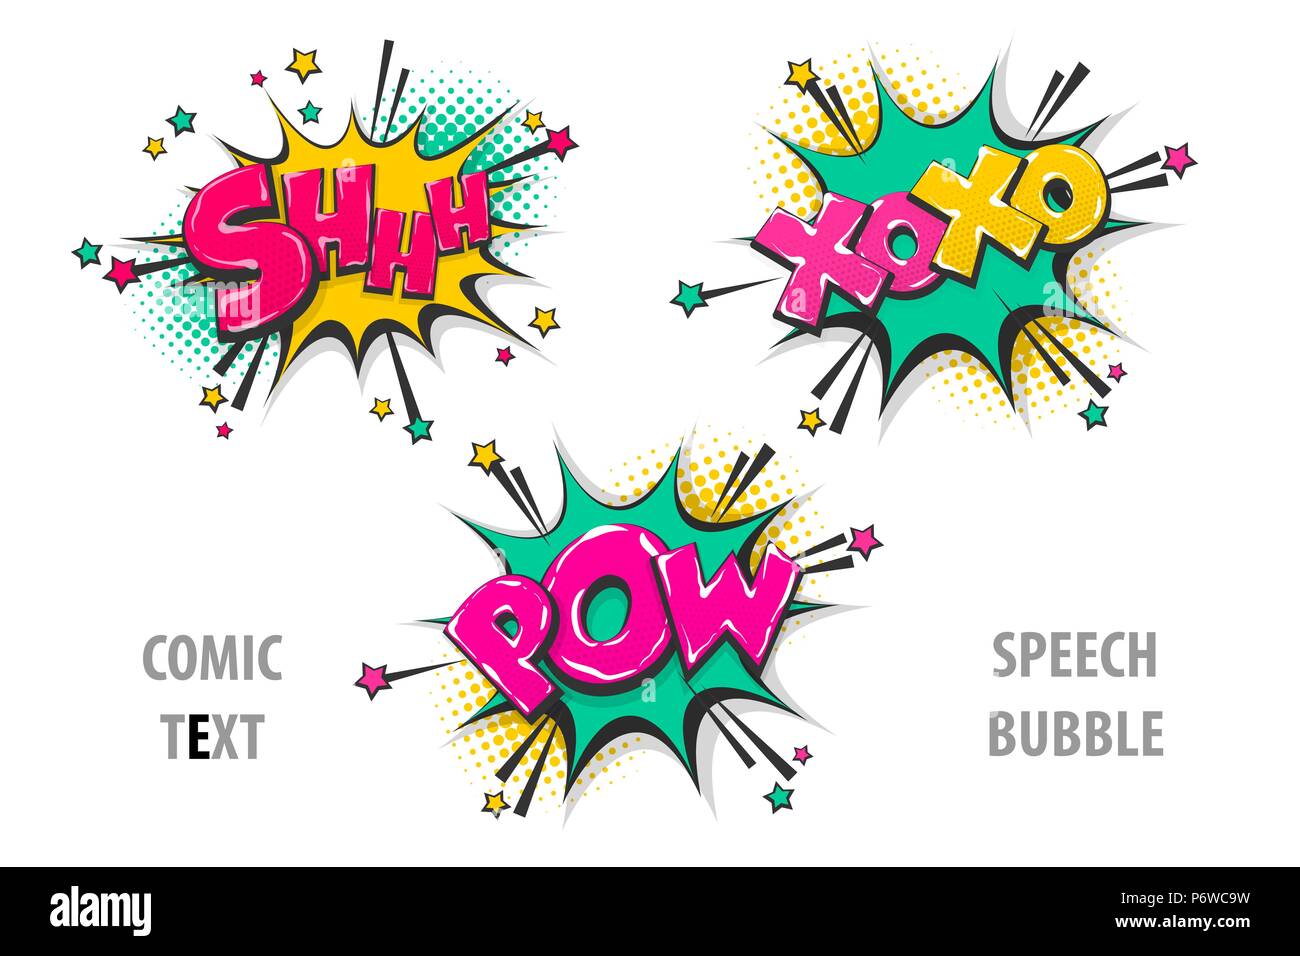 Définir le texte de la bande dessinée bulle shh xoxo pow Illustration de Vecteur